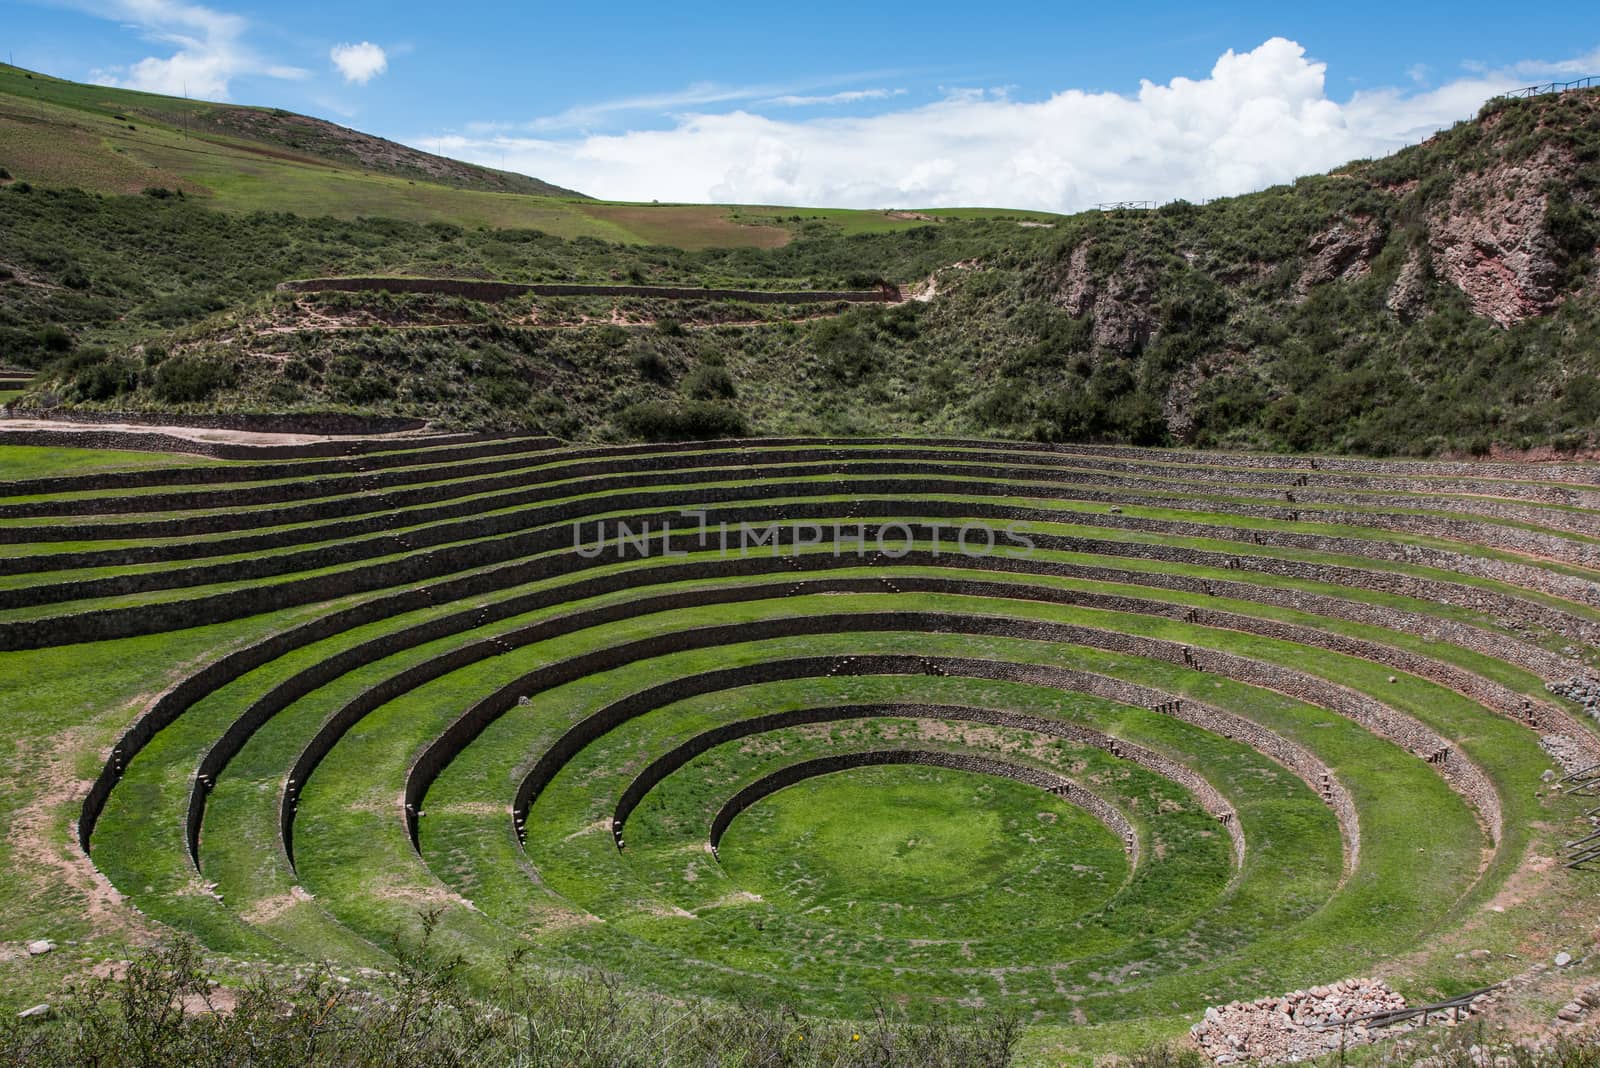  123RF.com Agricultural terraces in Moray, Cusco, Peru